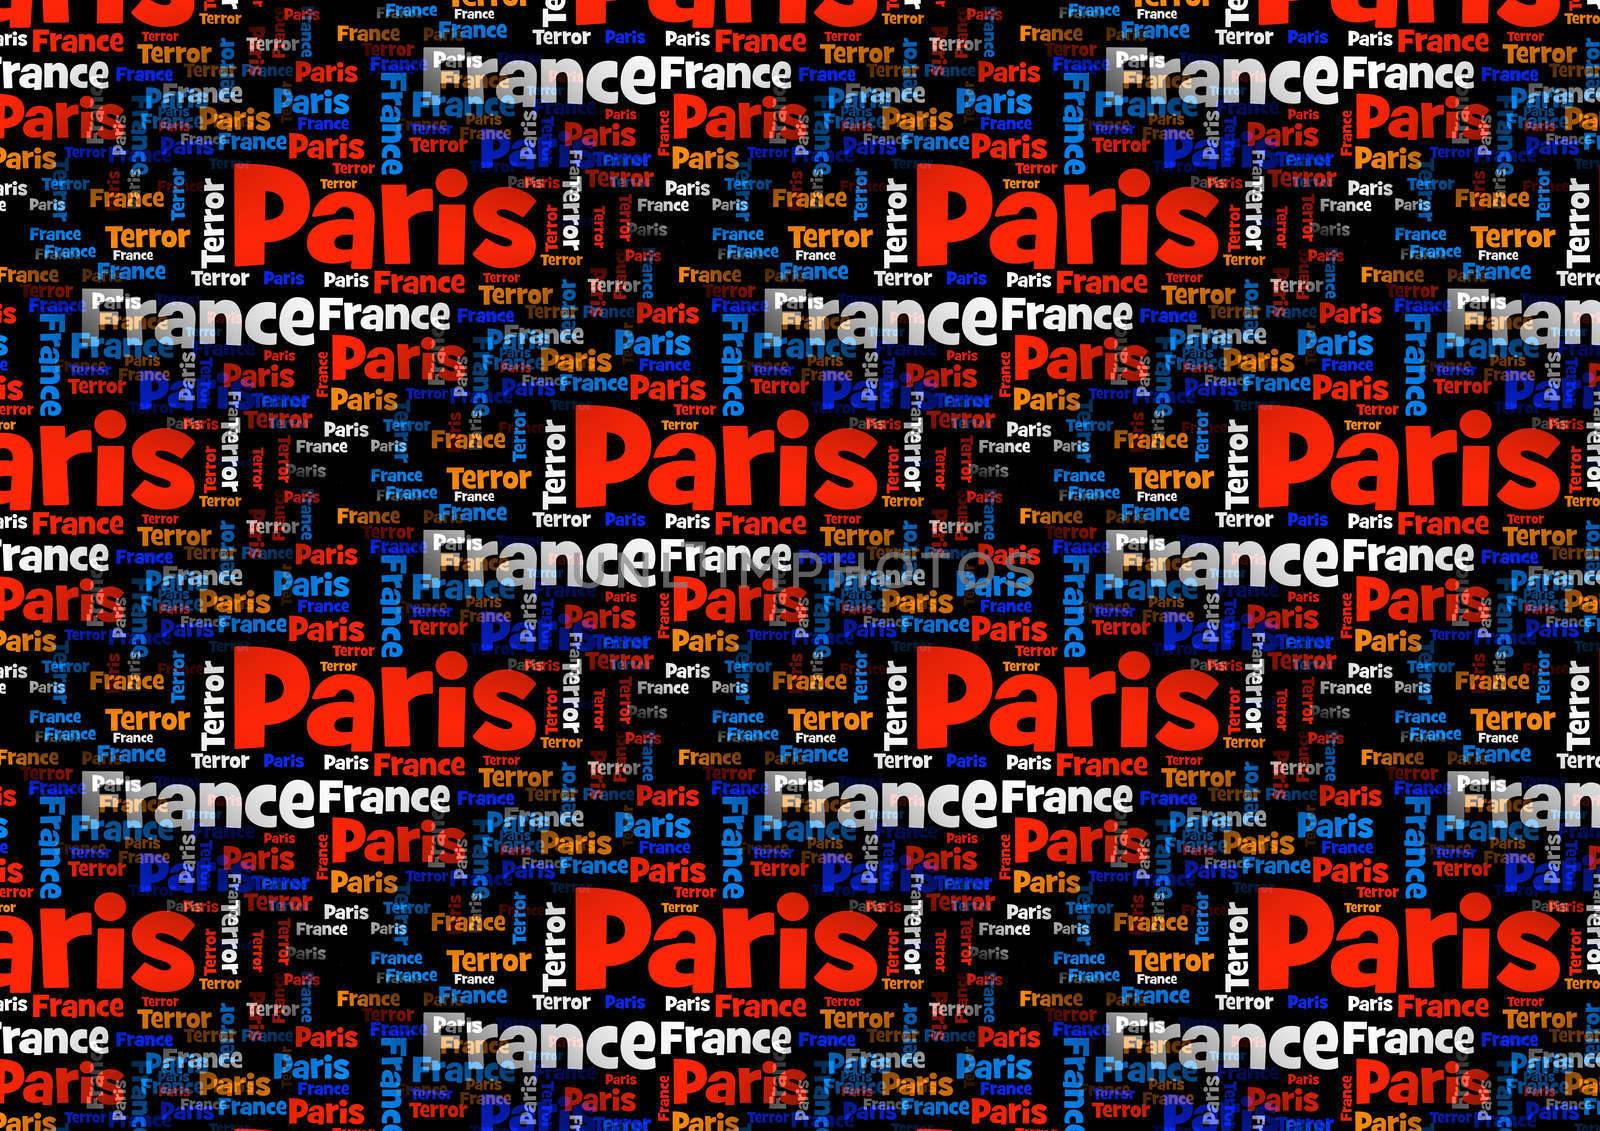 Paris France Terror by hlehnerer